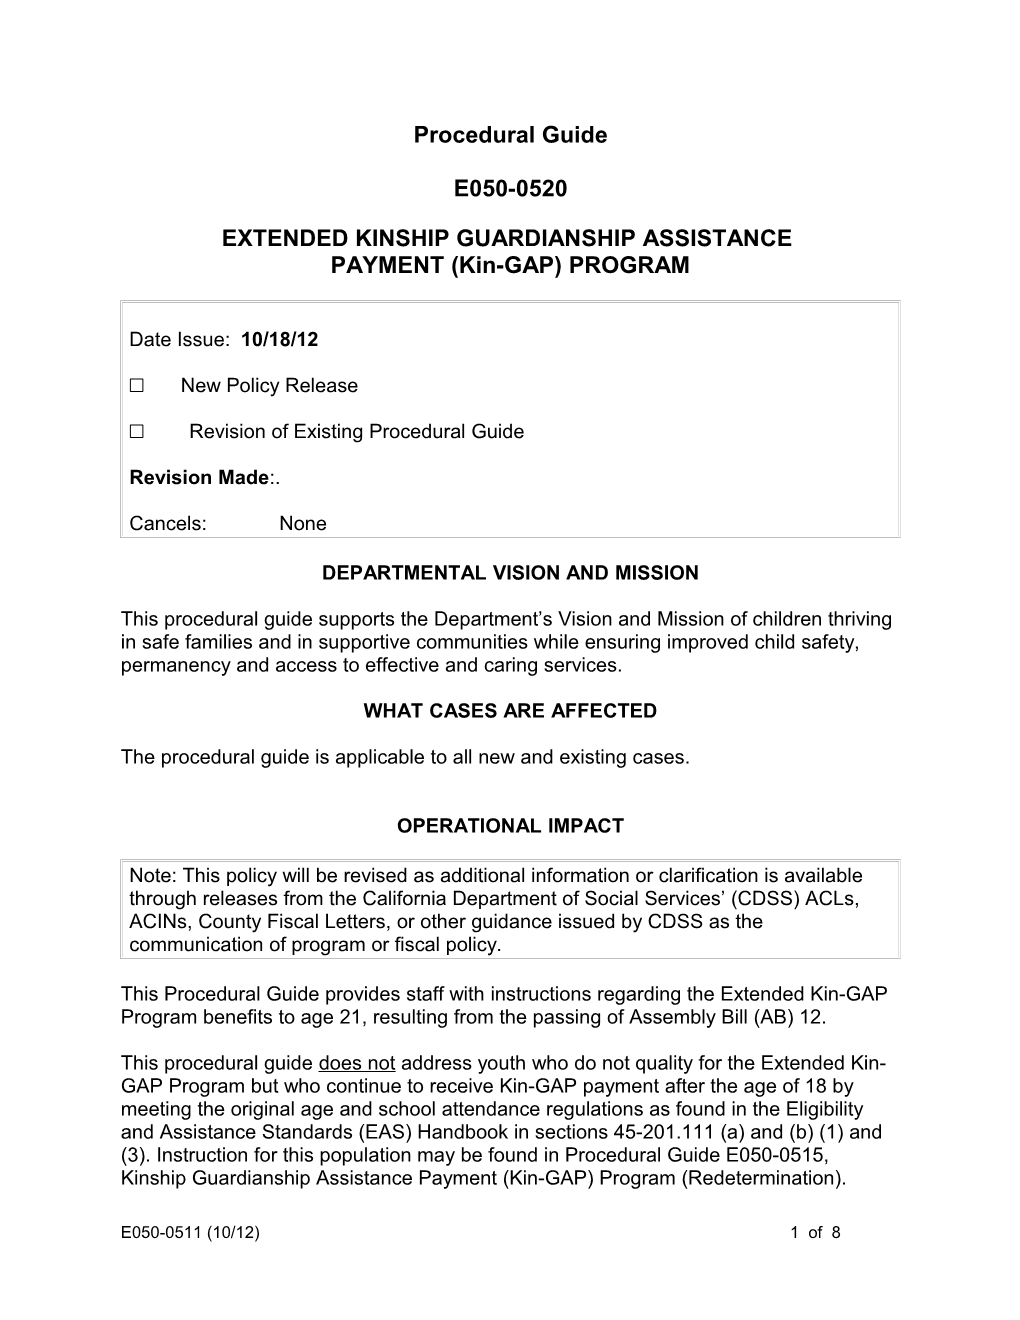 E050-0-520, Extended Kinship Guardiansship Assistance Payment (Kin-GAP) Proram